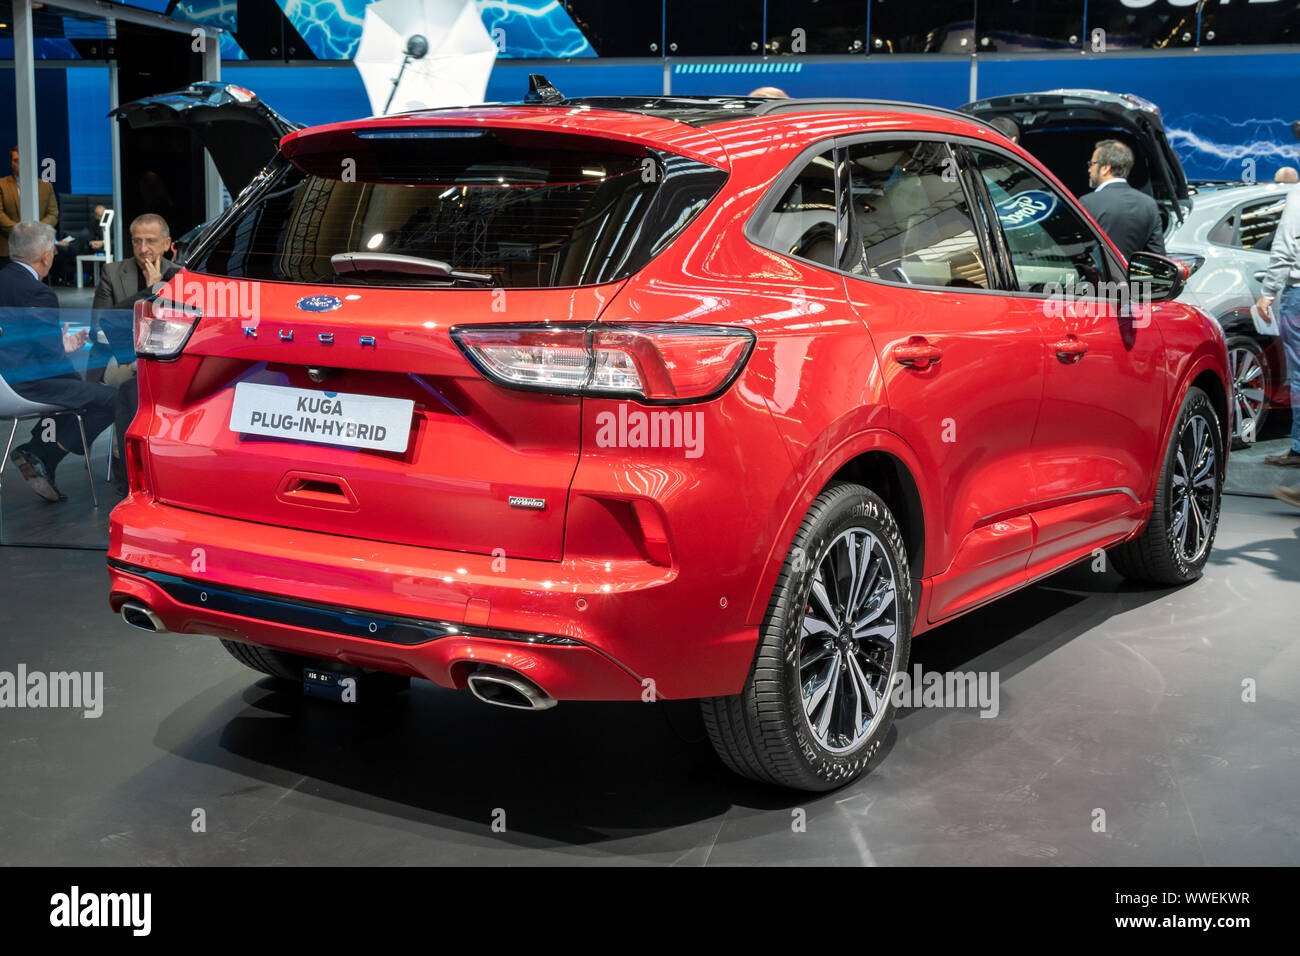 Francfort, Allemagne - Sep 10, 2019 : nouvelle Ford Kuga voiture hybride plug-in en vedette à l'IAA Frankfurt Motor Show 2019. Banque D'Images